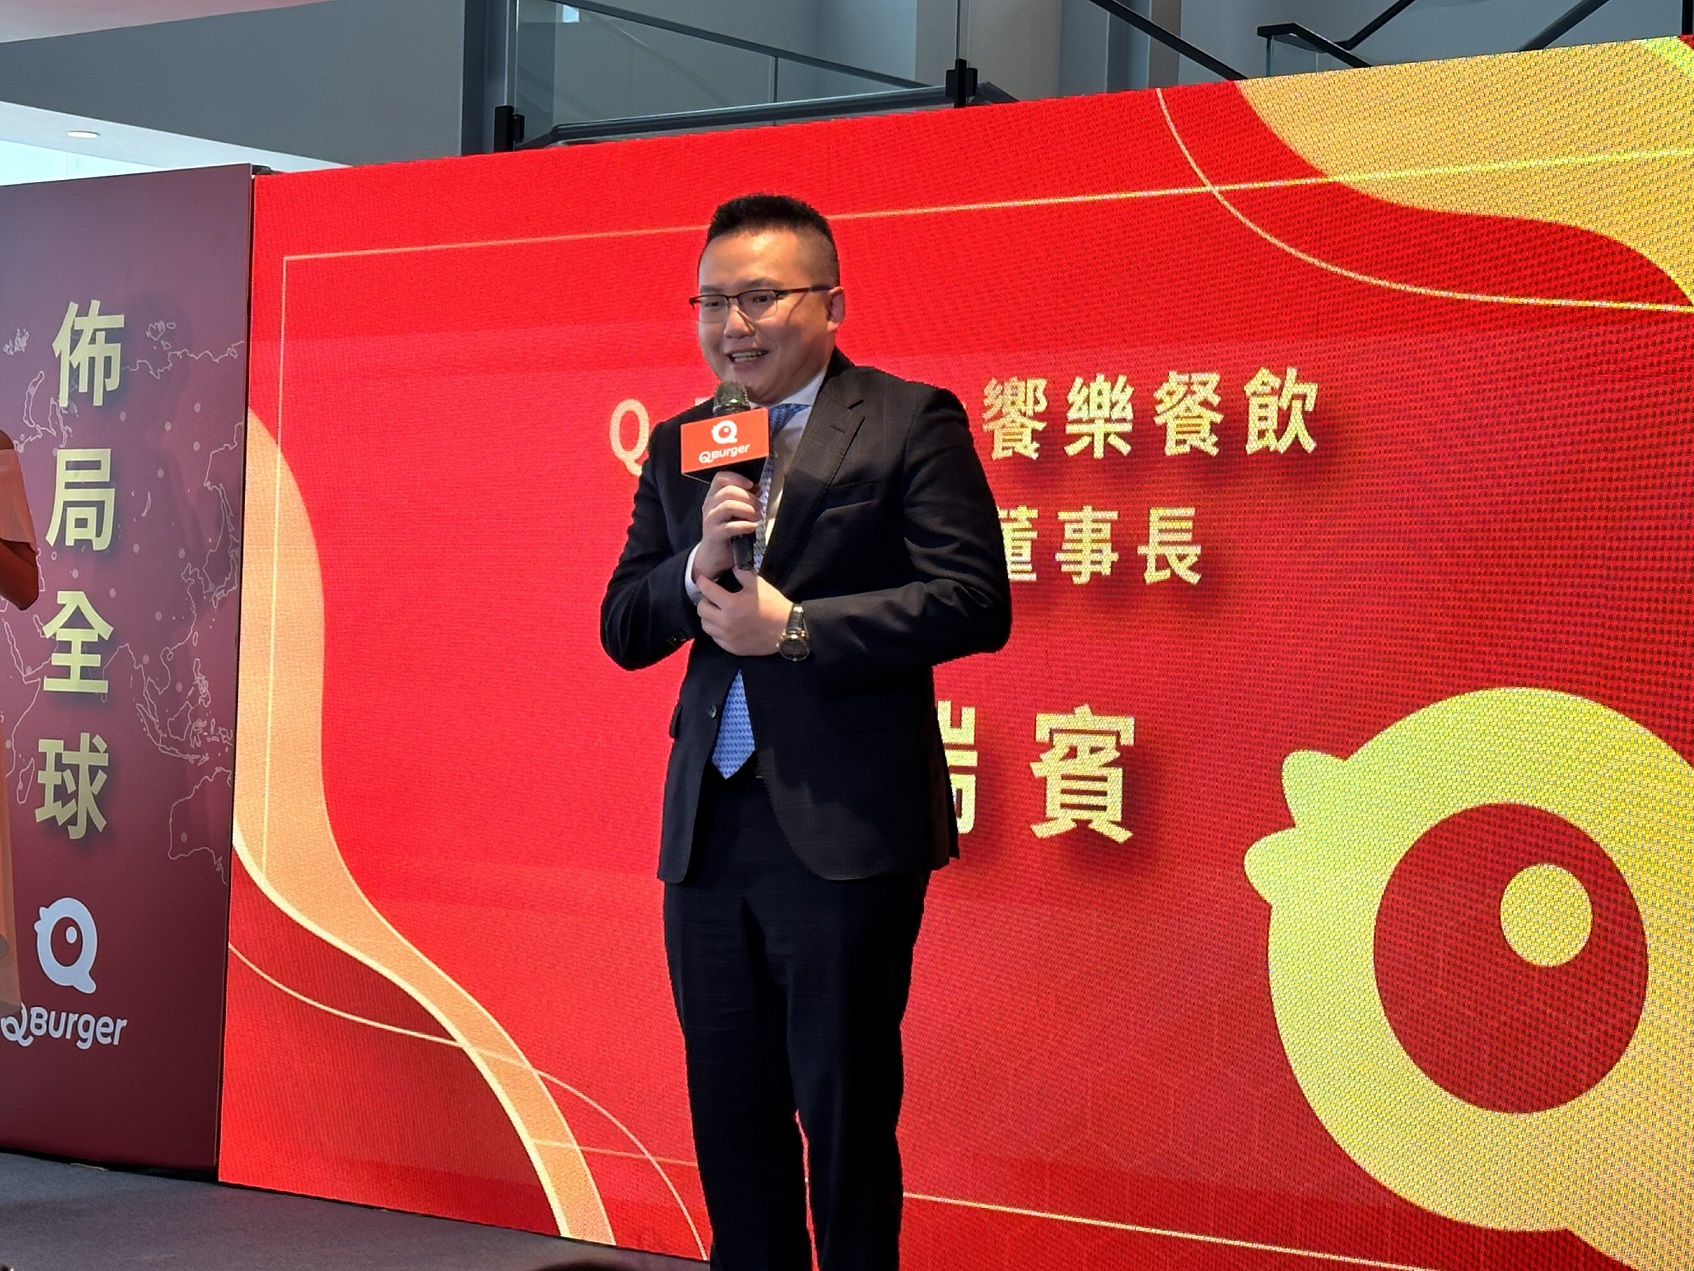 饗樂餐飲(Q Burger)董事長鄭瑞賓表示，為了提升市場競爭力以及倉儲管理，在三重打造台灣營運總部，作為未來企業研發產品、人才培育、業務行銷推動、以及物流中心之主要據點